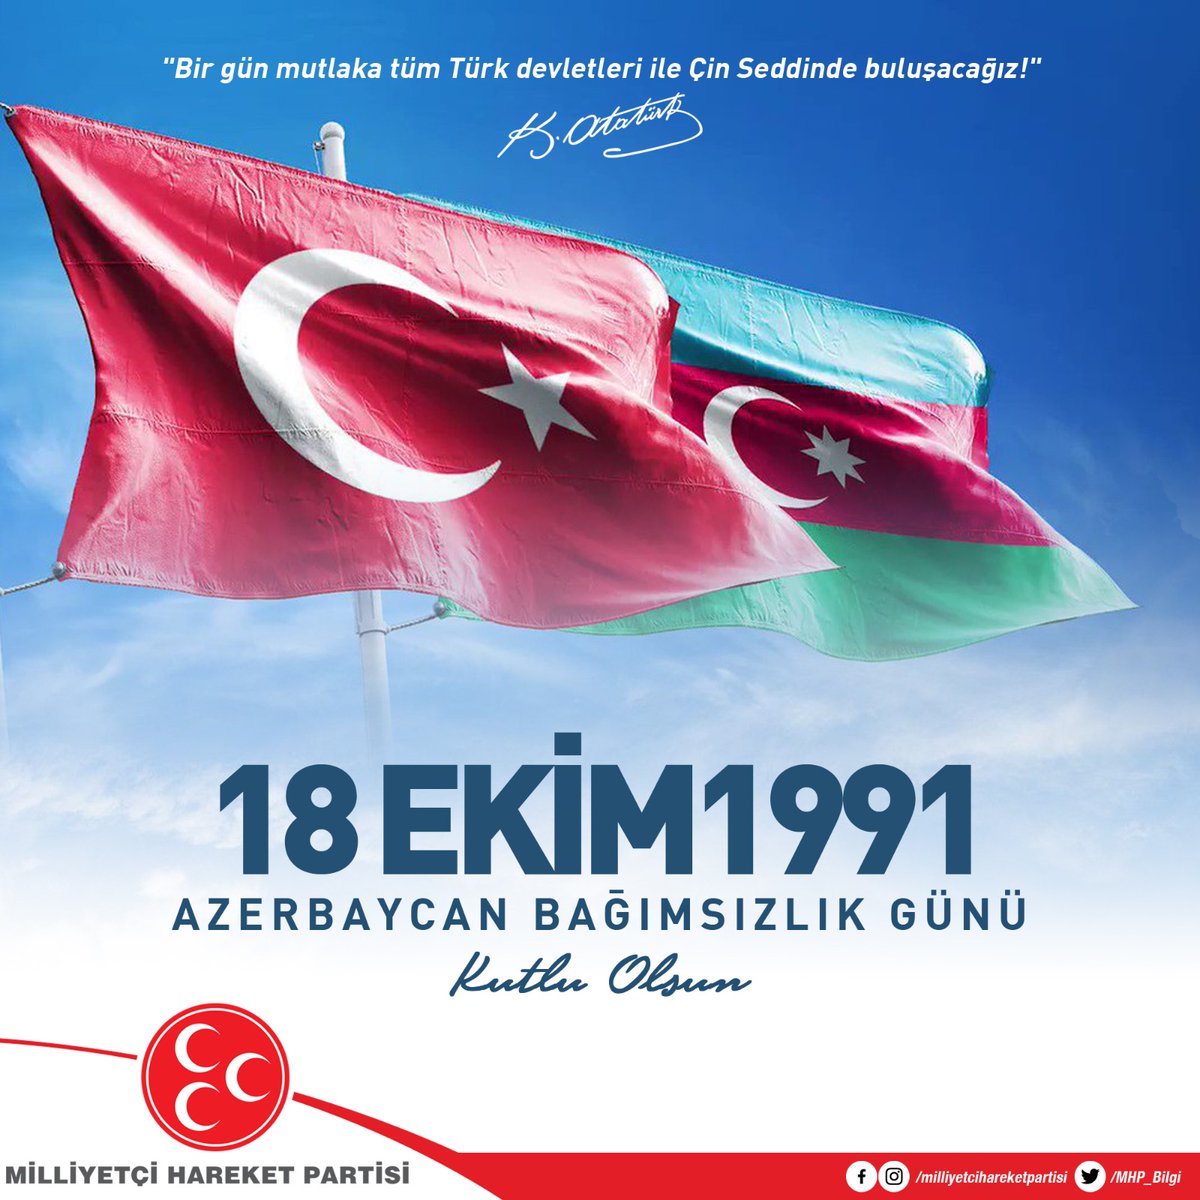 Azerbaycan Bağımsızlık Günü Kutlu Olsun. 🇦🇿
#ikidoevləttəkmillət #ikidevlettekmillet